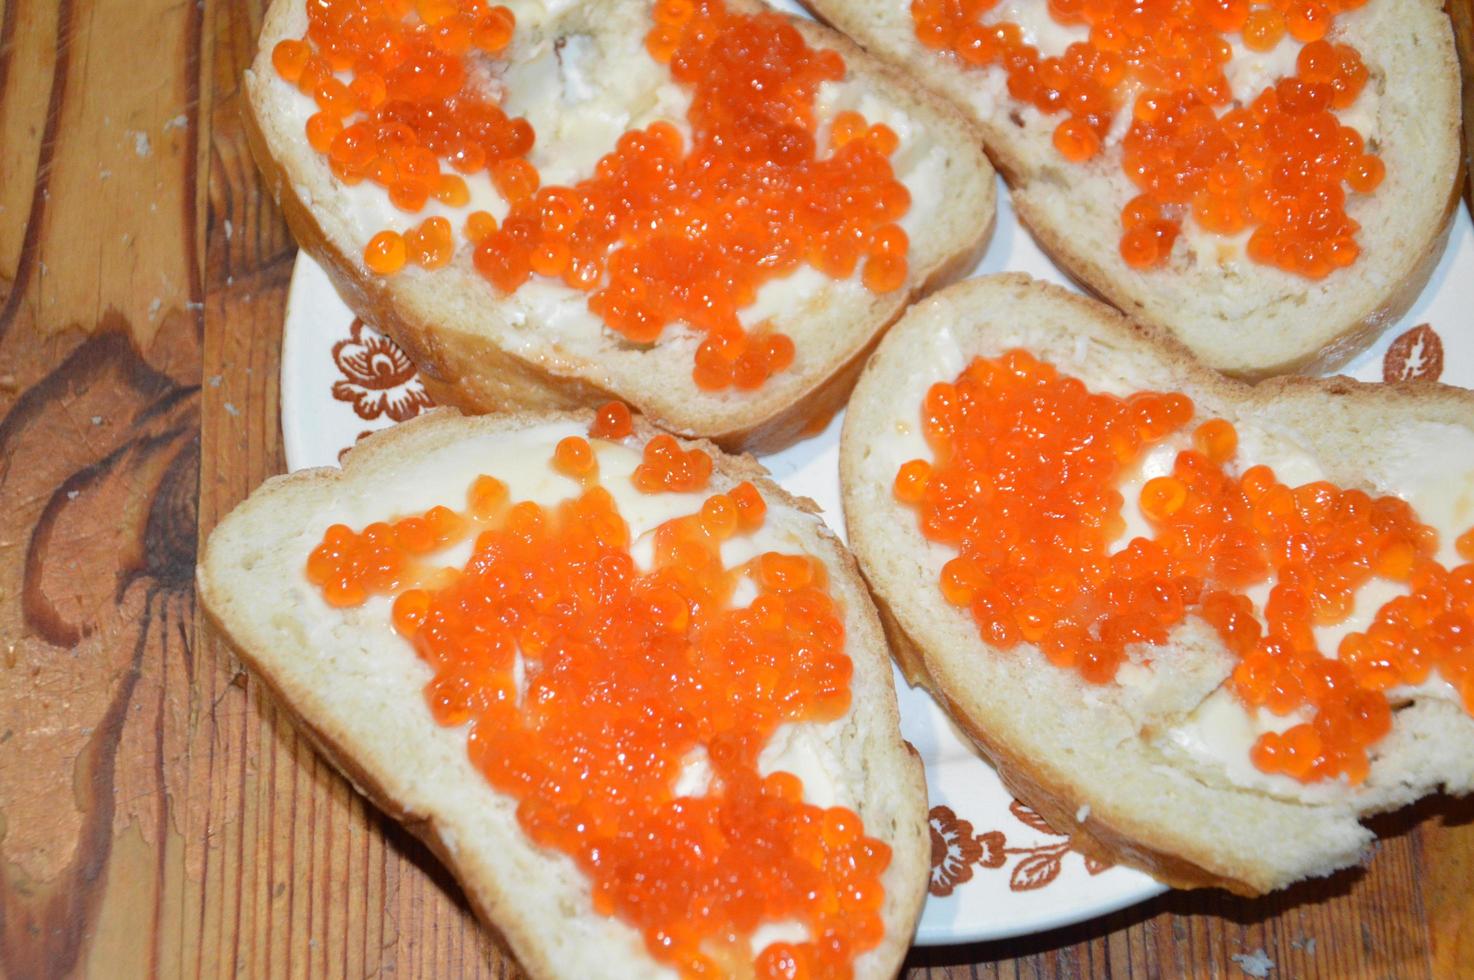 tartinade de caviar rouge sur des sandwichs au pain blanc et au beurre photo